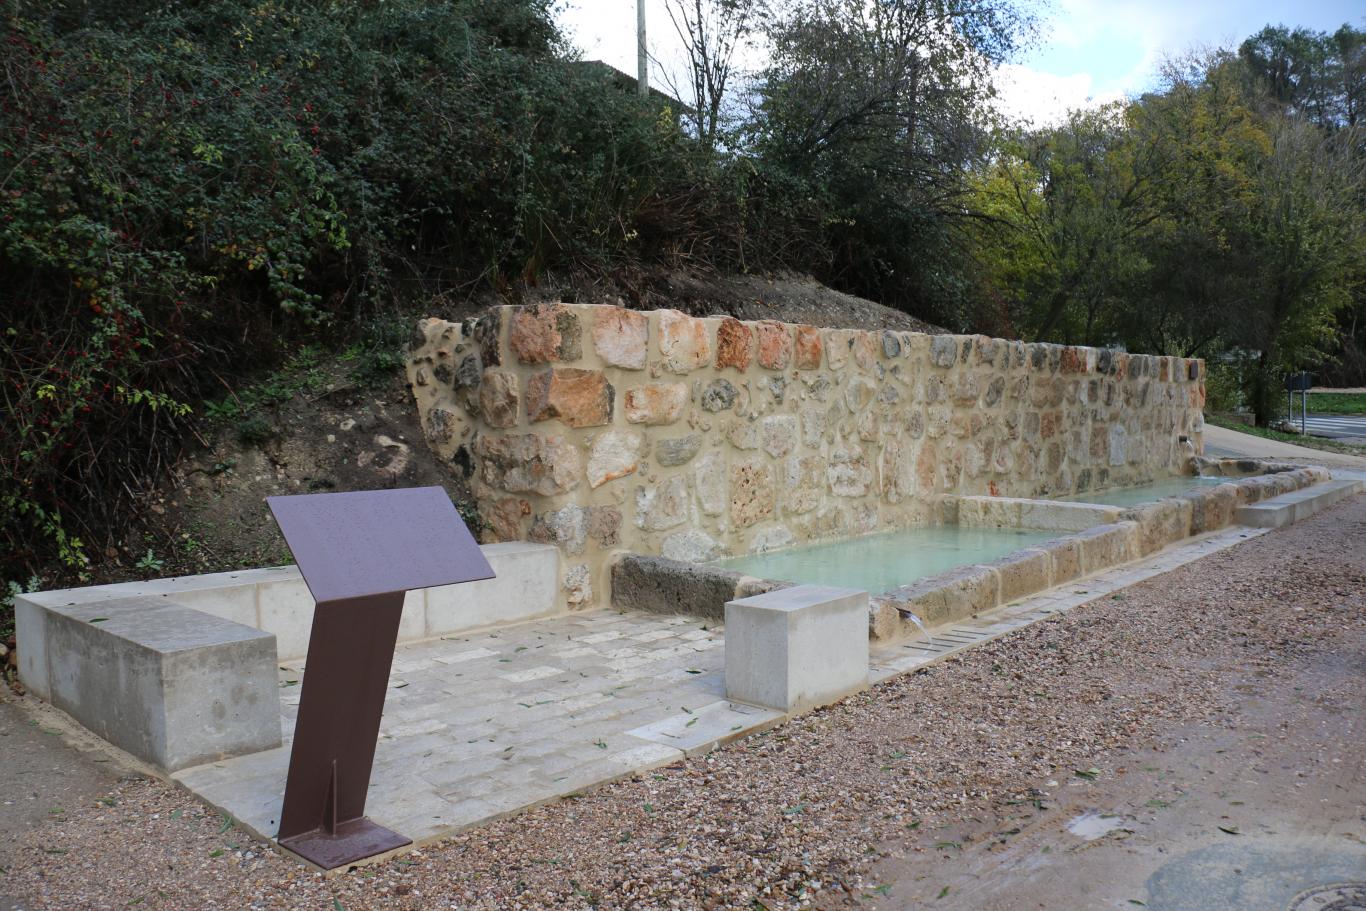 The Caño Alto Fountain in Santorcaz